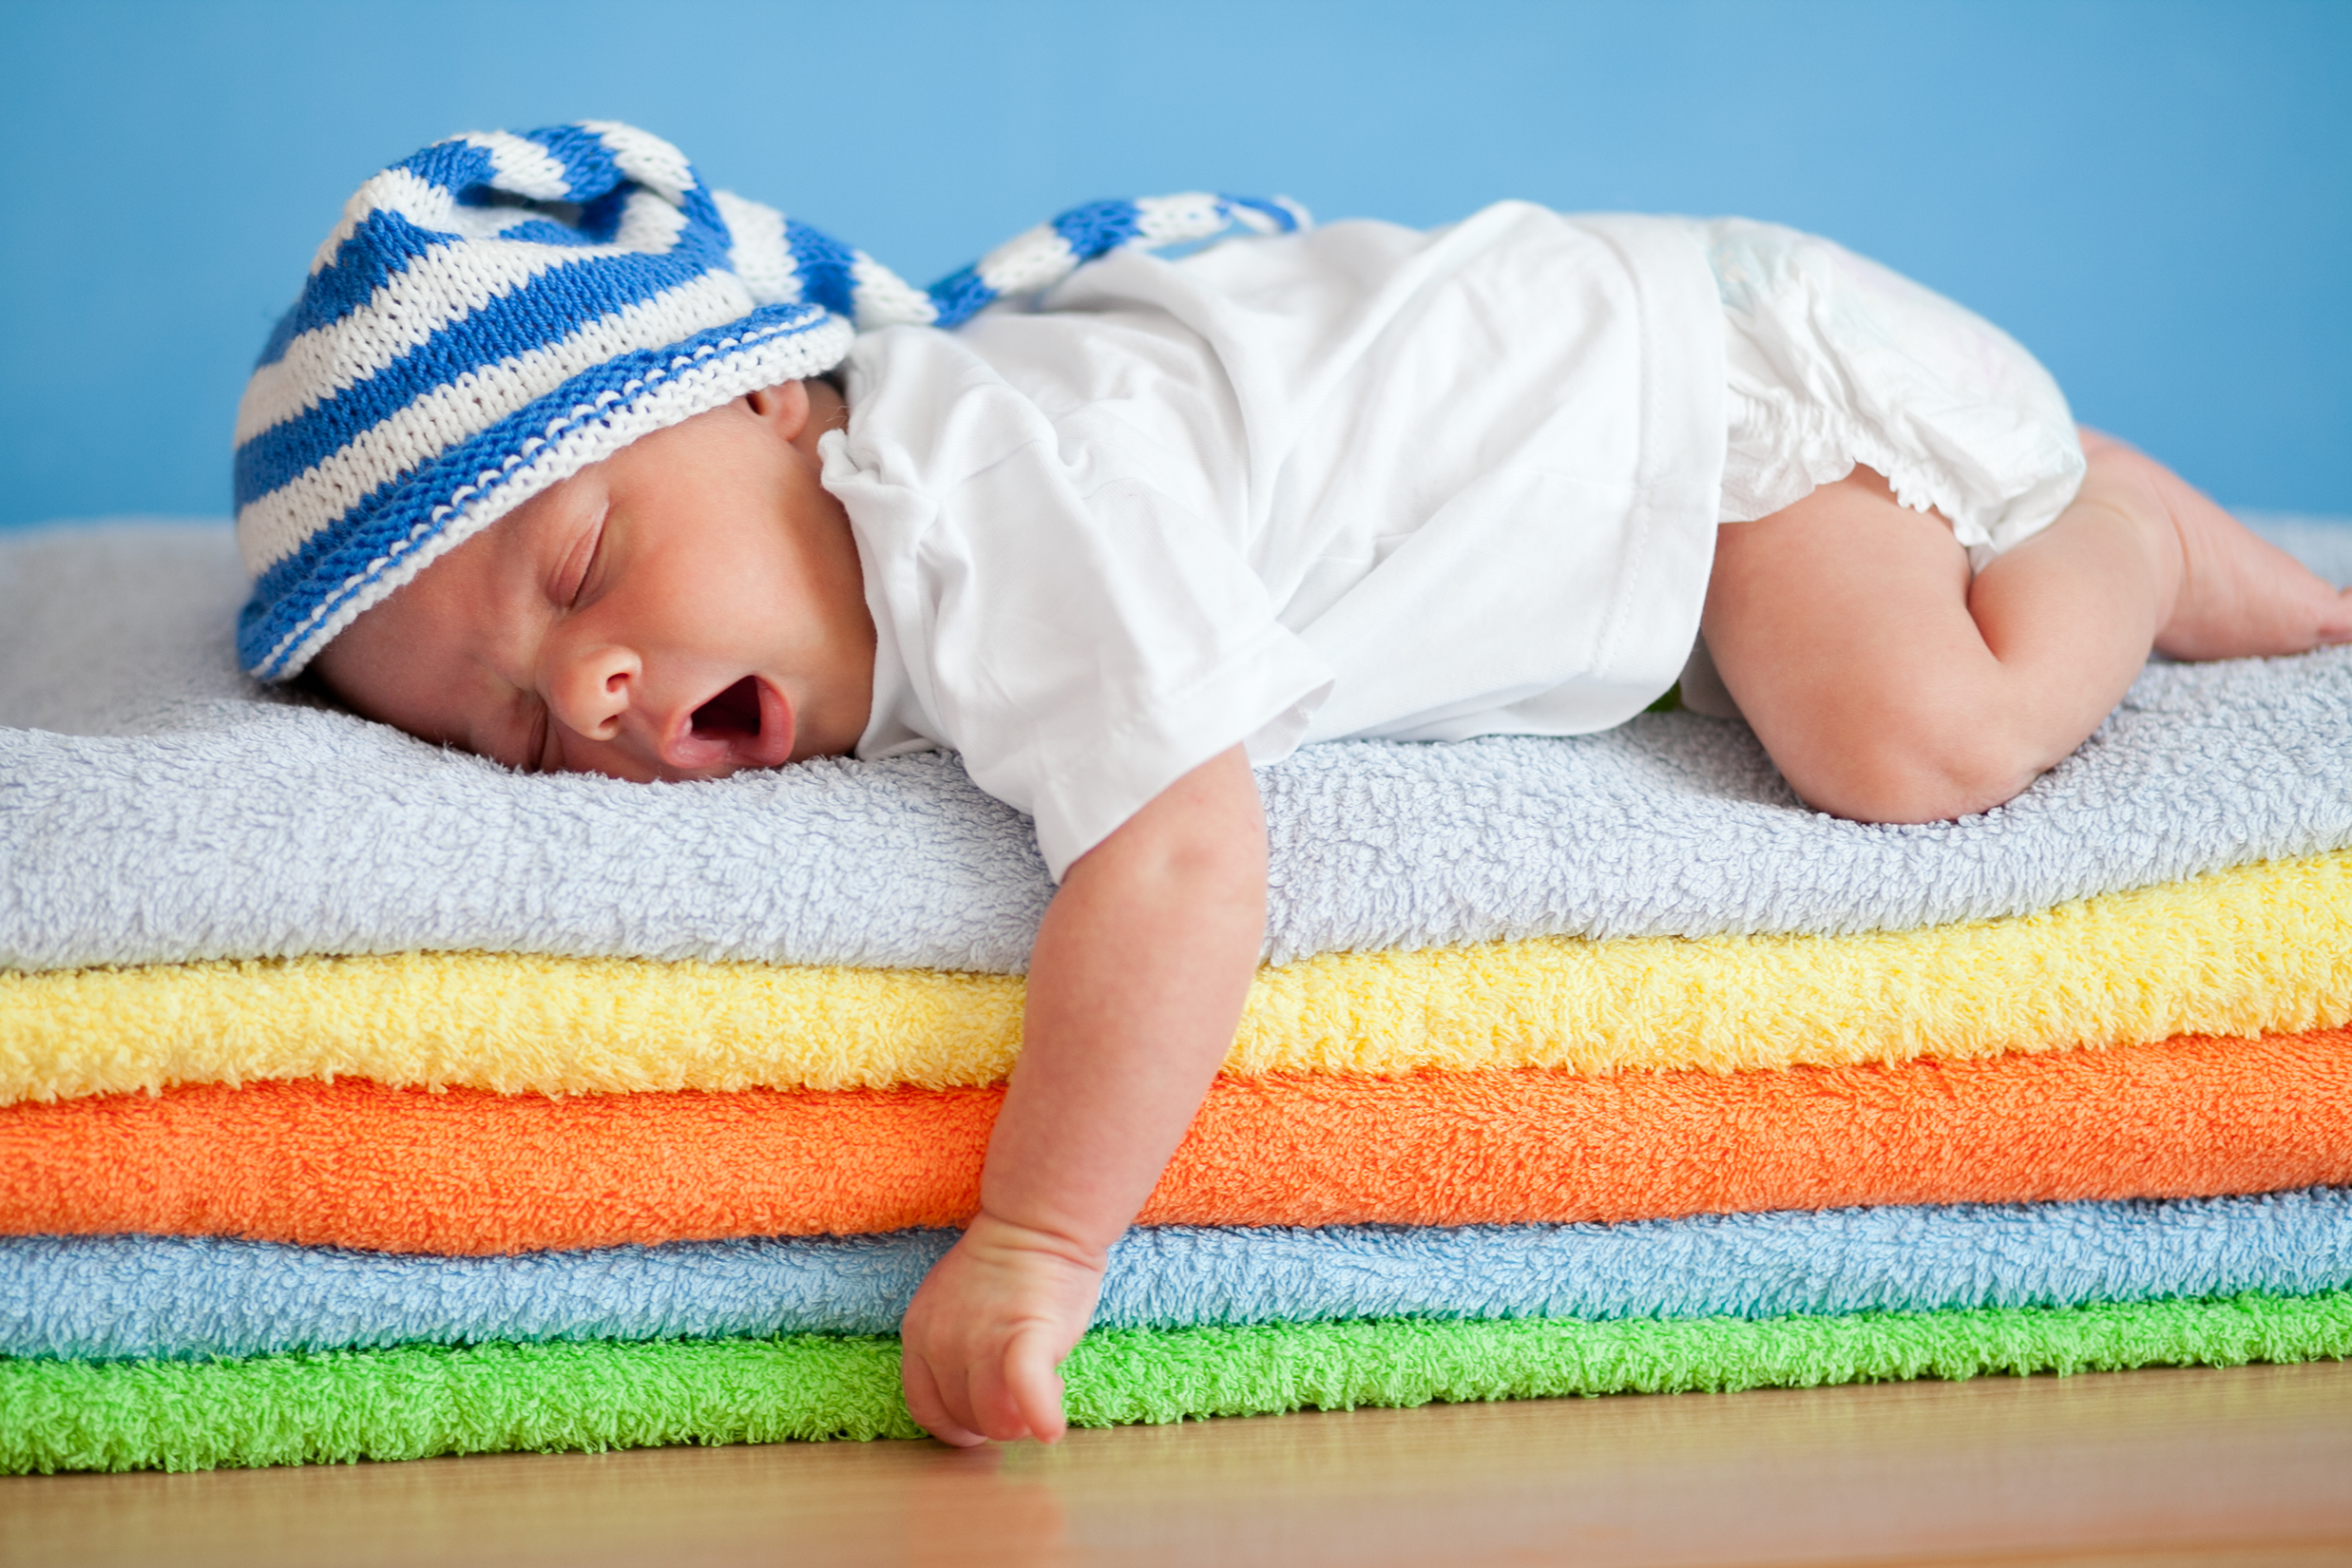 dormir comme un bébé permet de régénérer sa peau : astuce de beauté